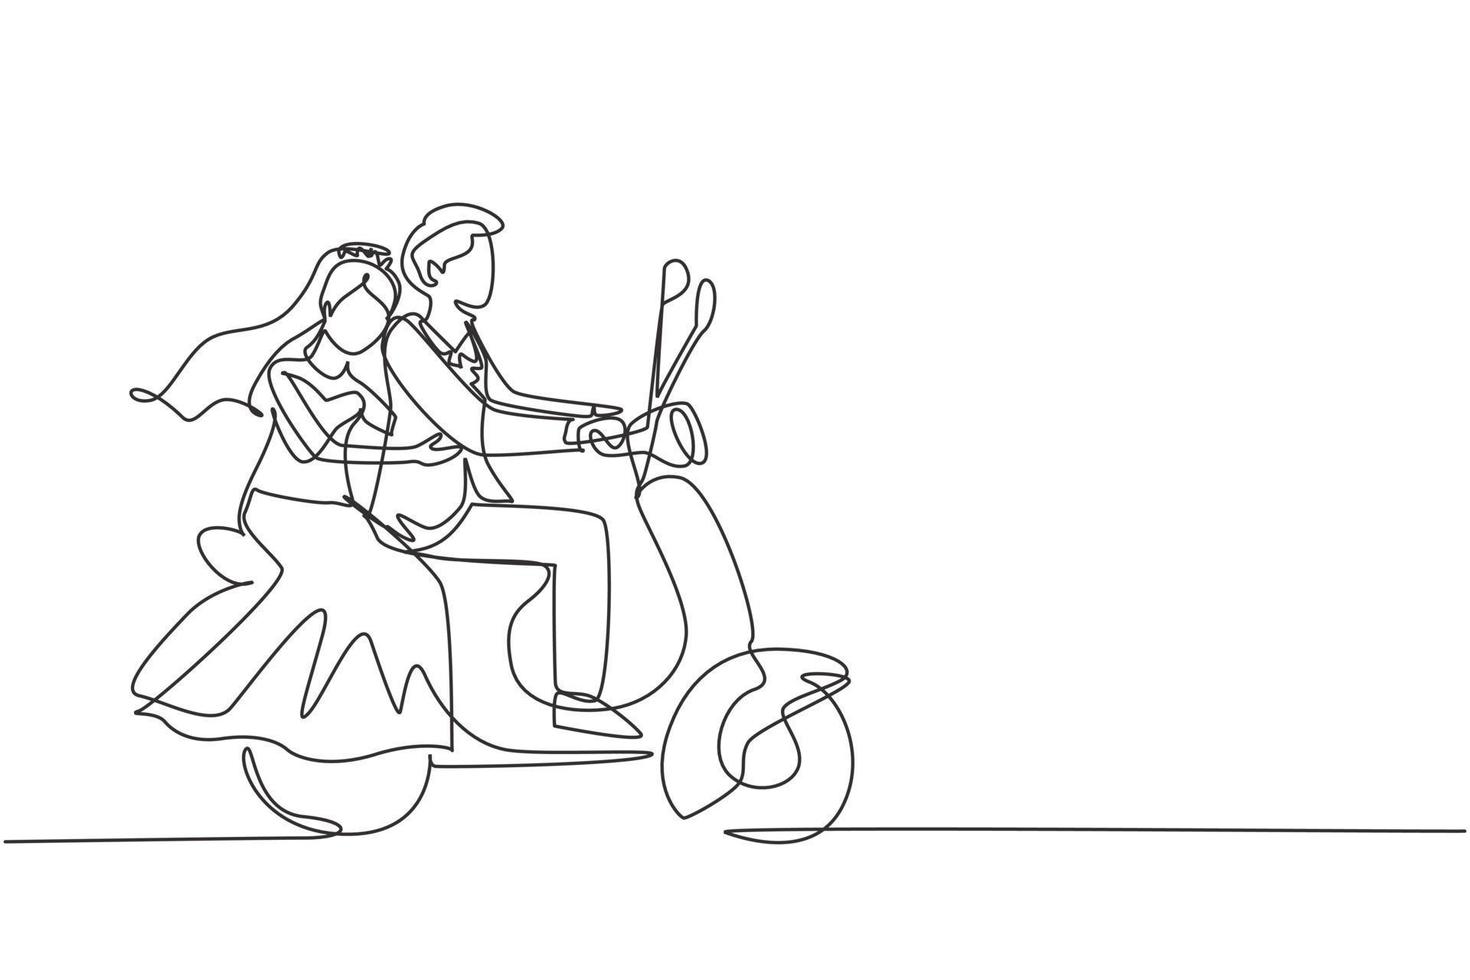 disegno a linea continua singola coppia sposata in sella a una moto. l'uomo che guida lo scooter e la donna sono passeggeri mentre si abbracciano indossando un abito da sposa. guidando in sicurezza. vettore di disegno grafico a una linea